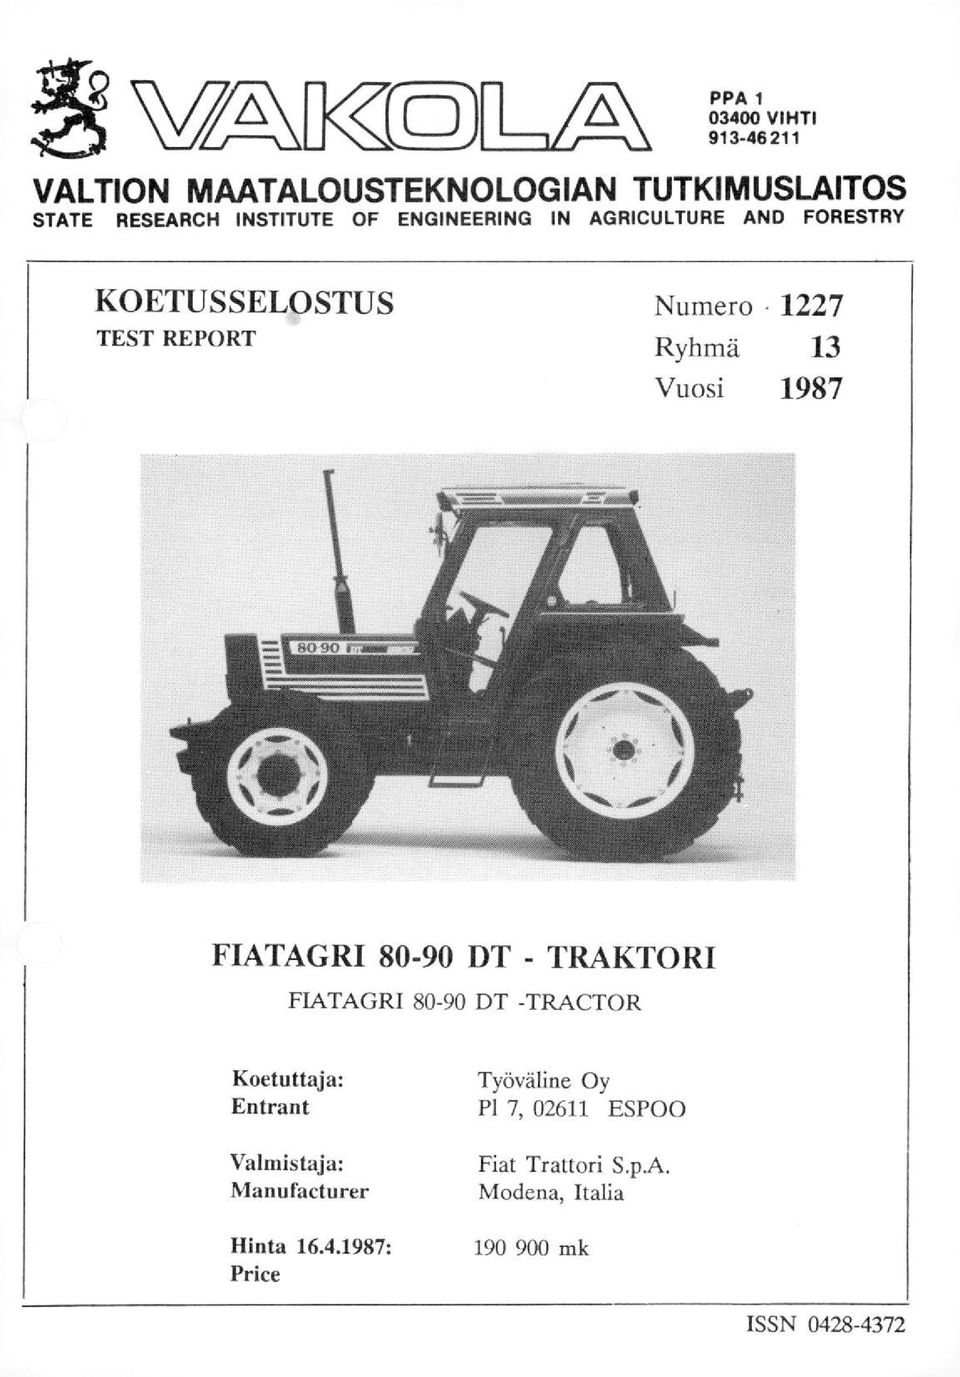 FIATAGRI 80-90 DT - TRAKTORI FIATAGRI 80-90 DT -TRACTOR Koetuttaja: Entrant Valmistaja: Manufacturer